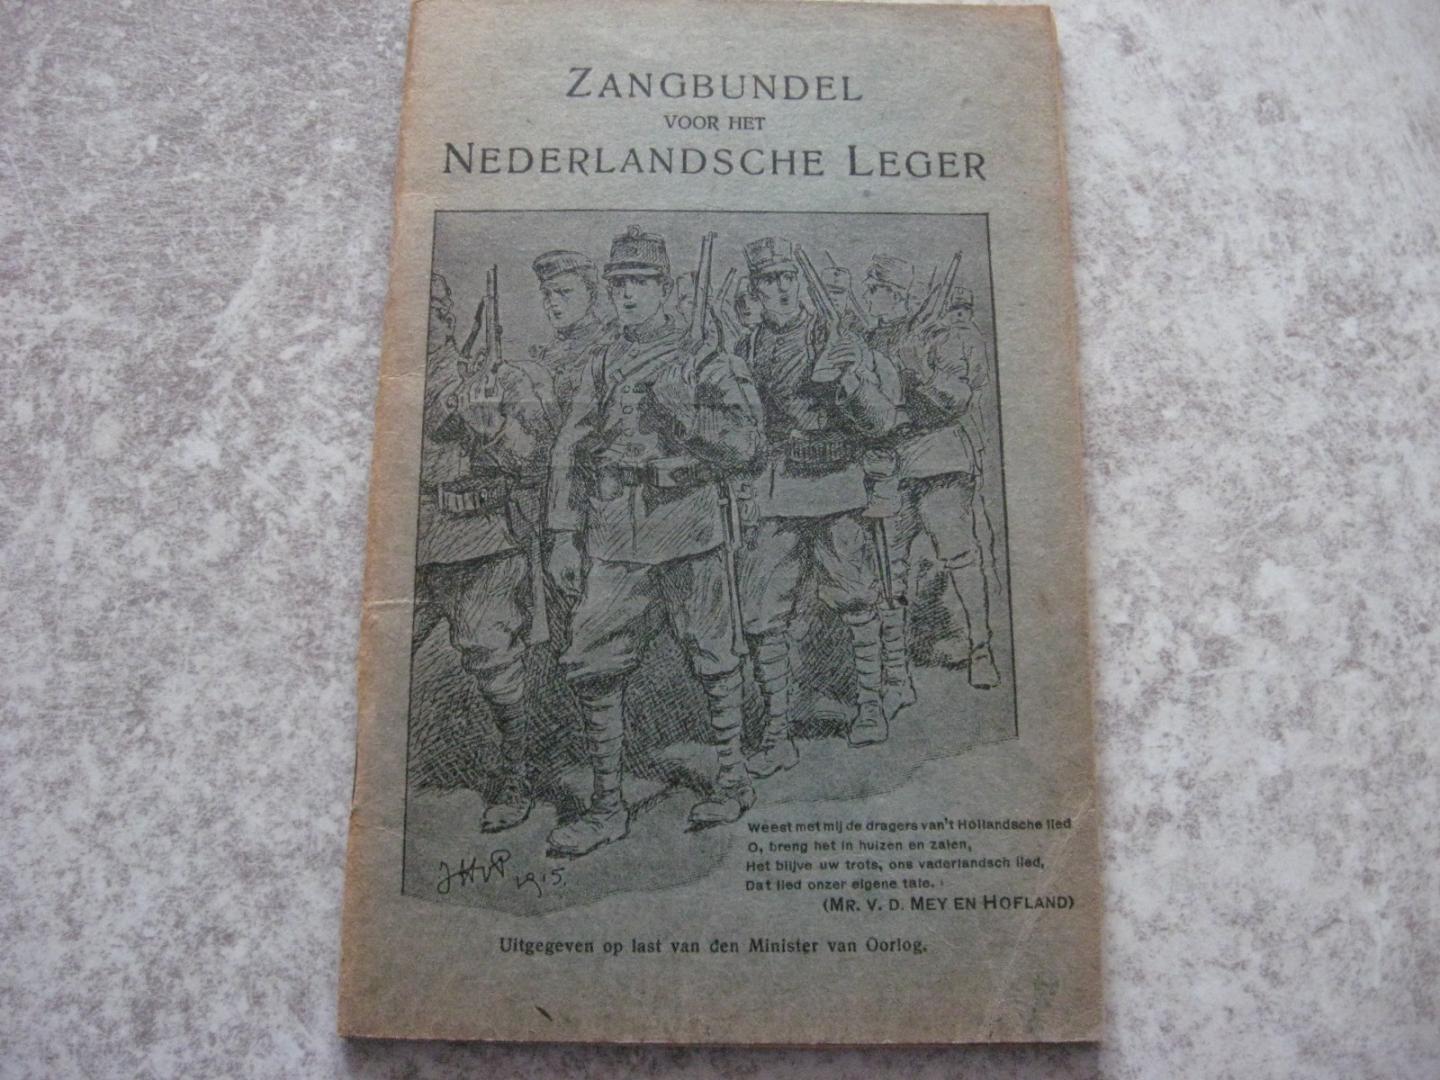  - Zangbundel voor het Nederlandsche Leger